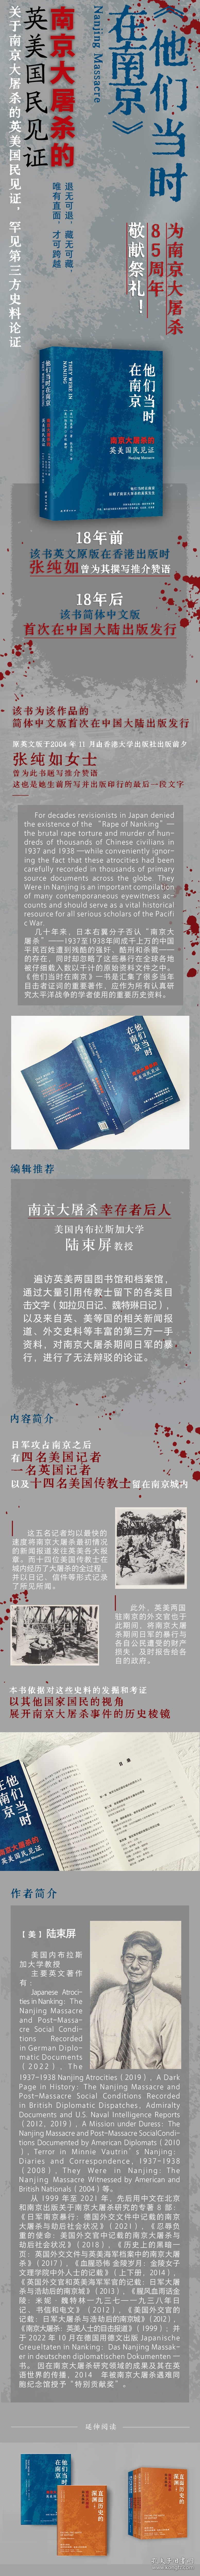 他们当时在南京：南京大屠杀的英美国民见证